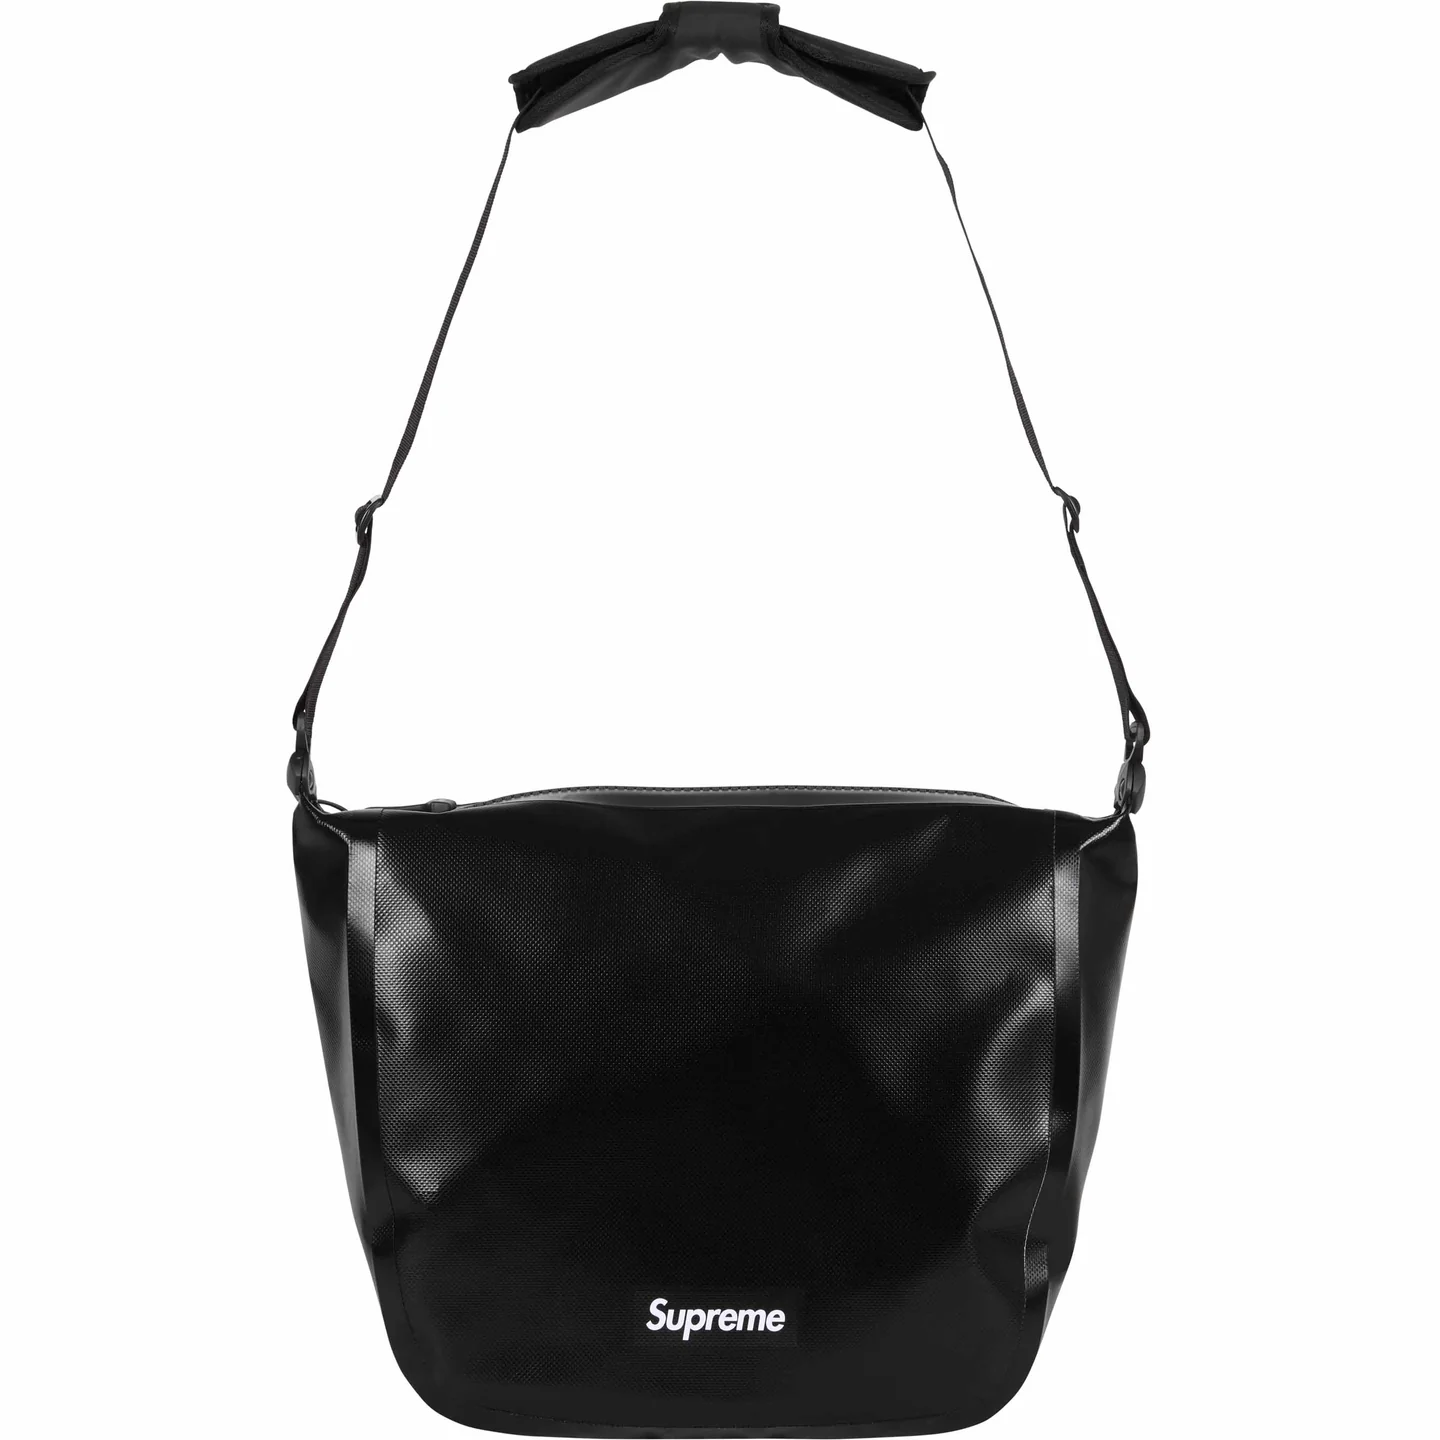 Supreme®/ORTLIEB Small Messenger Bag